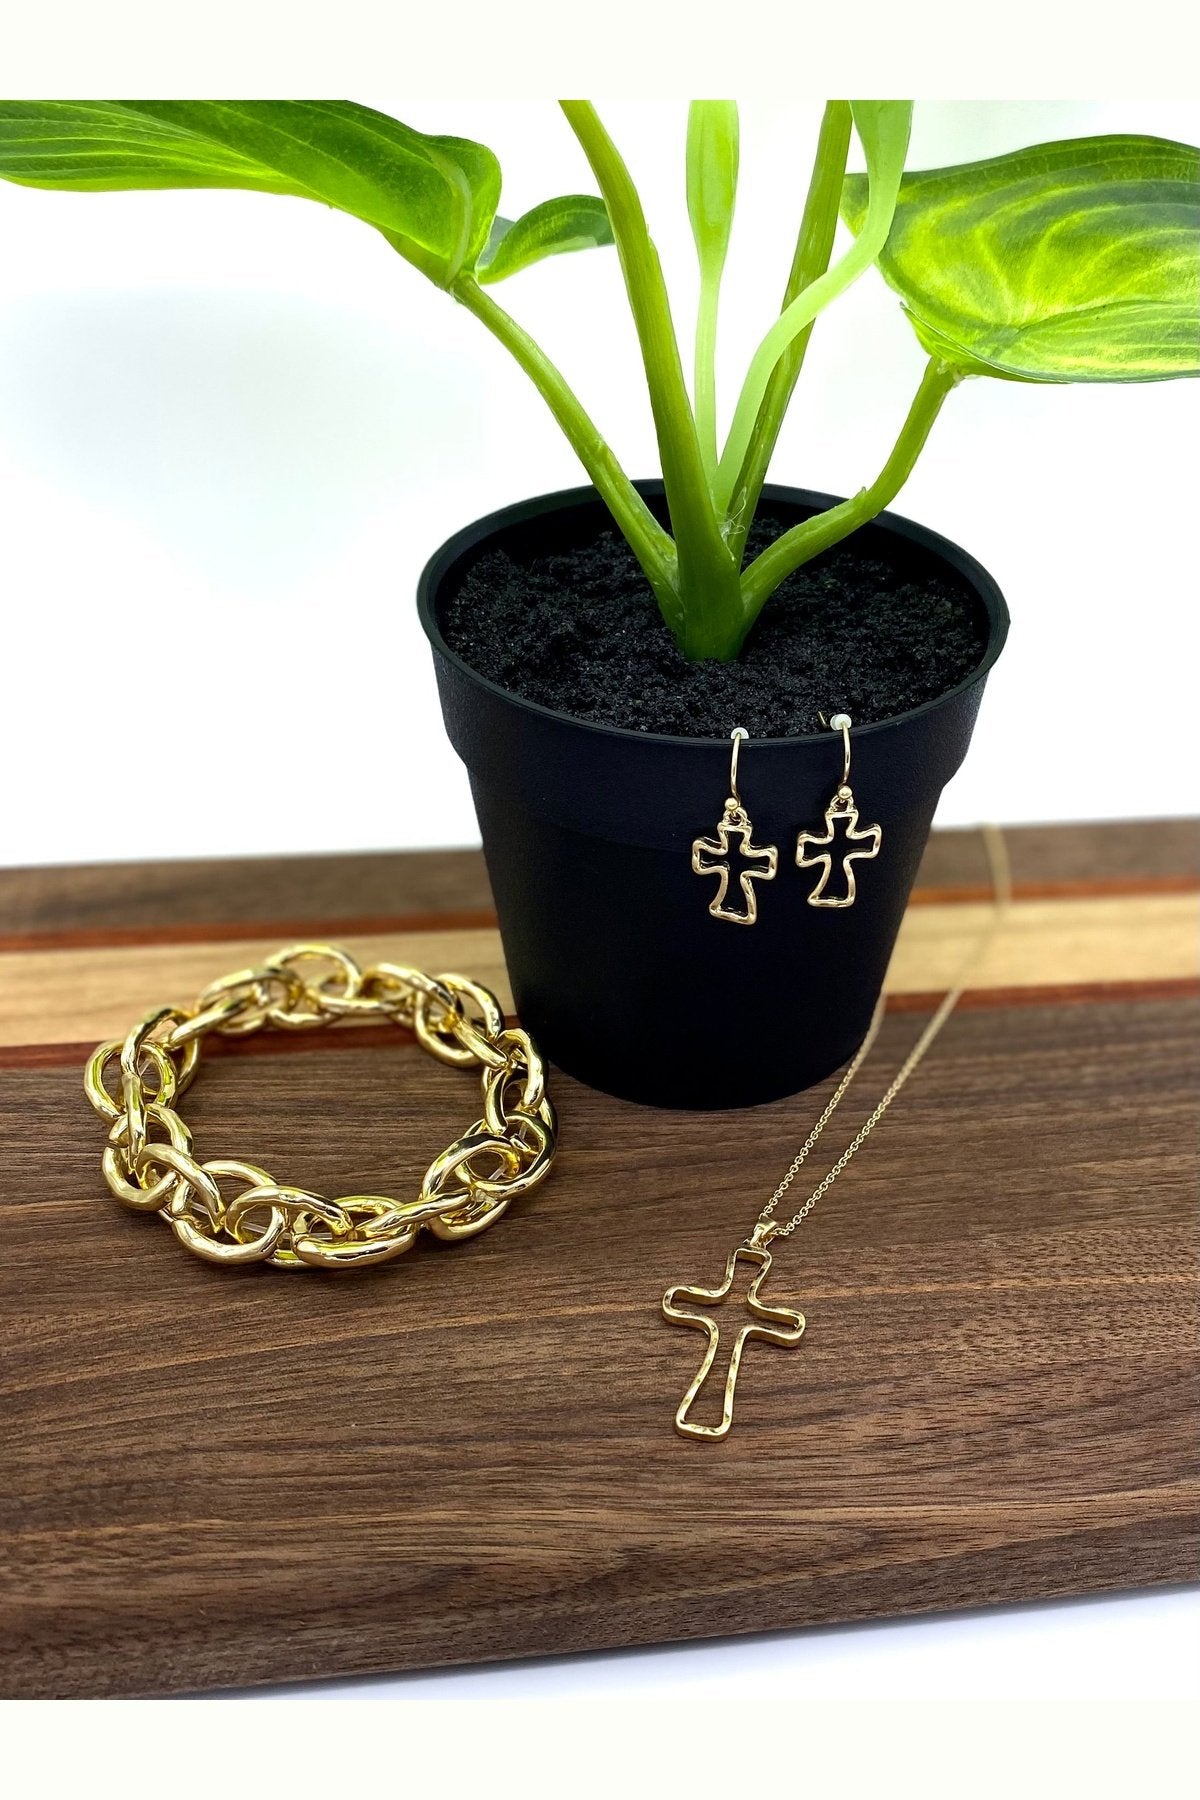 Gold Hollow Cross Earrings